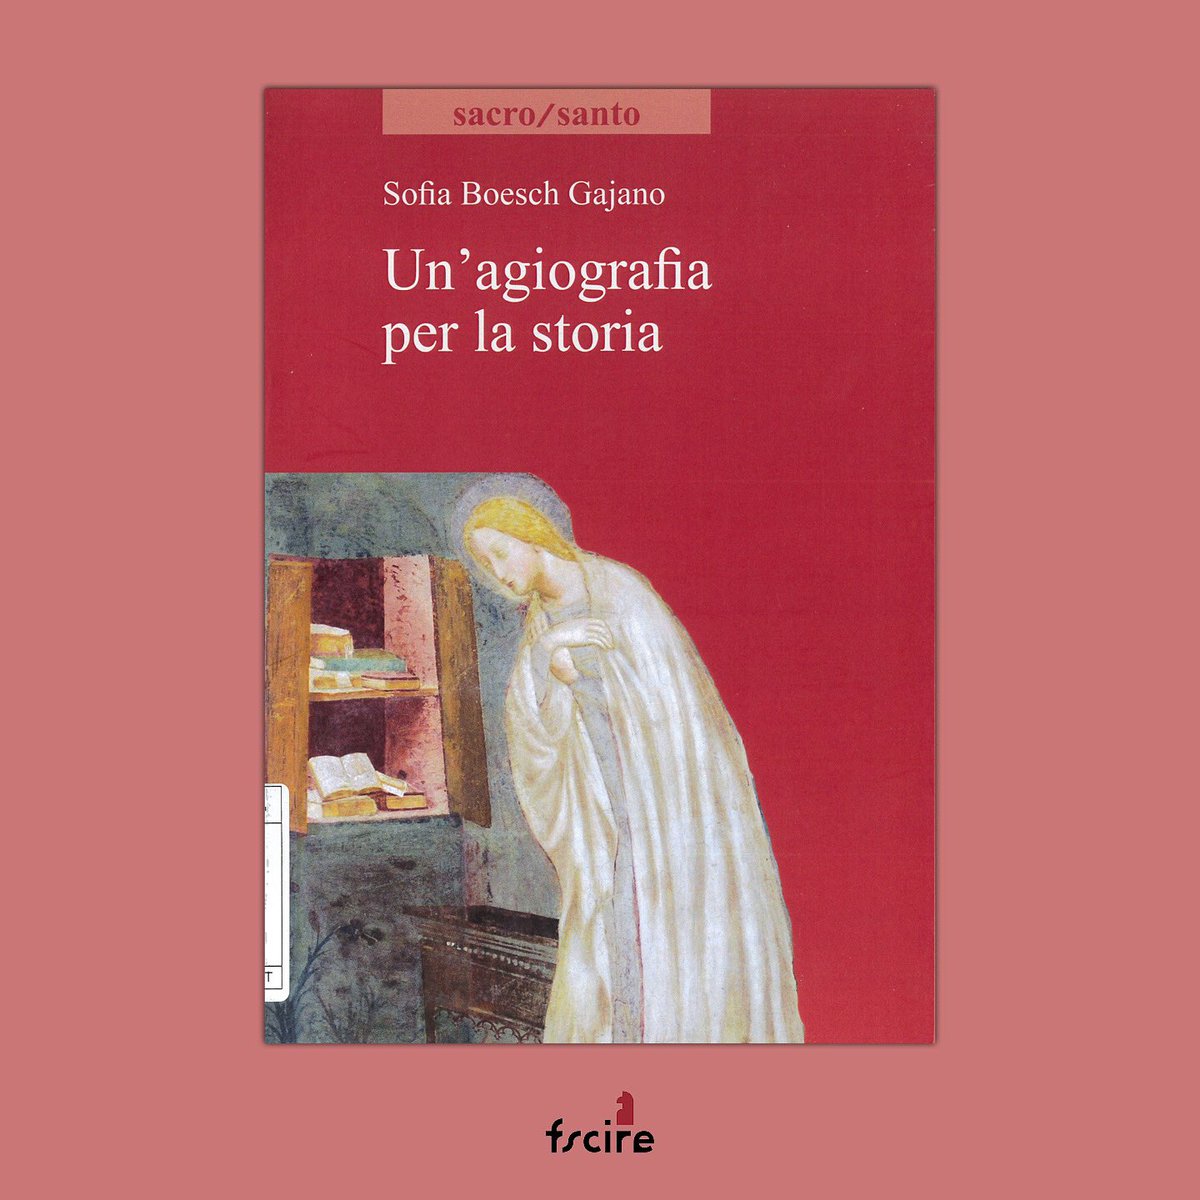 La #Biblioteca #Dossetti #consiglia la #lettura di “Un'agiografia per la storia” di Sofia Boesch Gajano, @ViellaEditrice, 2020.